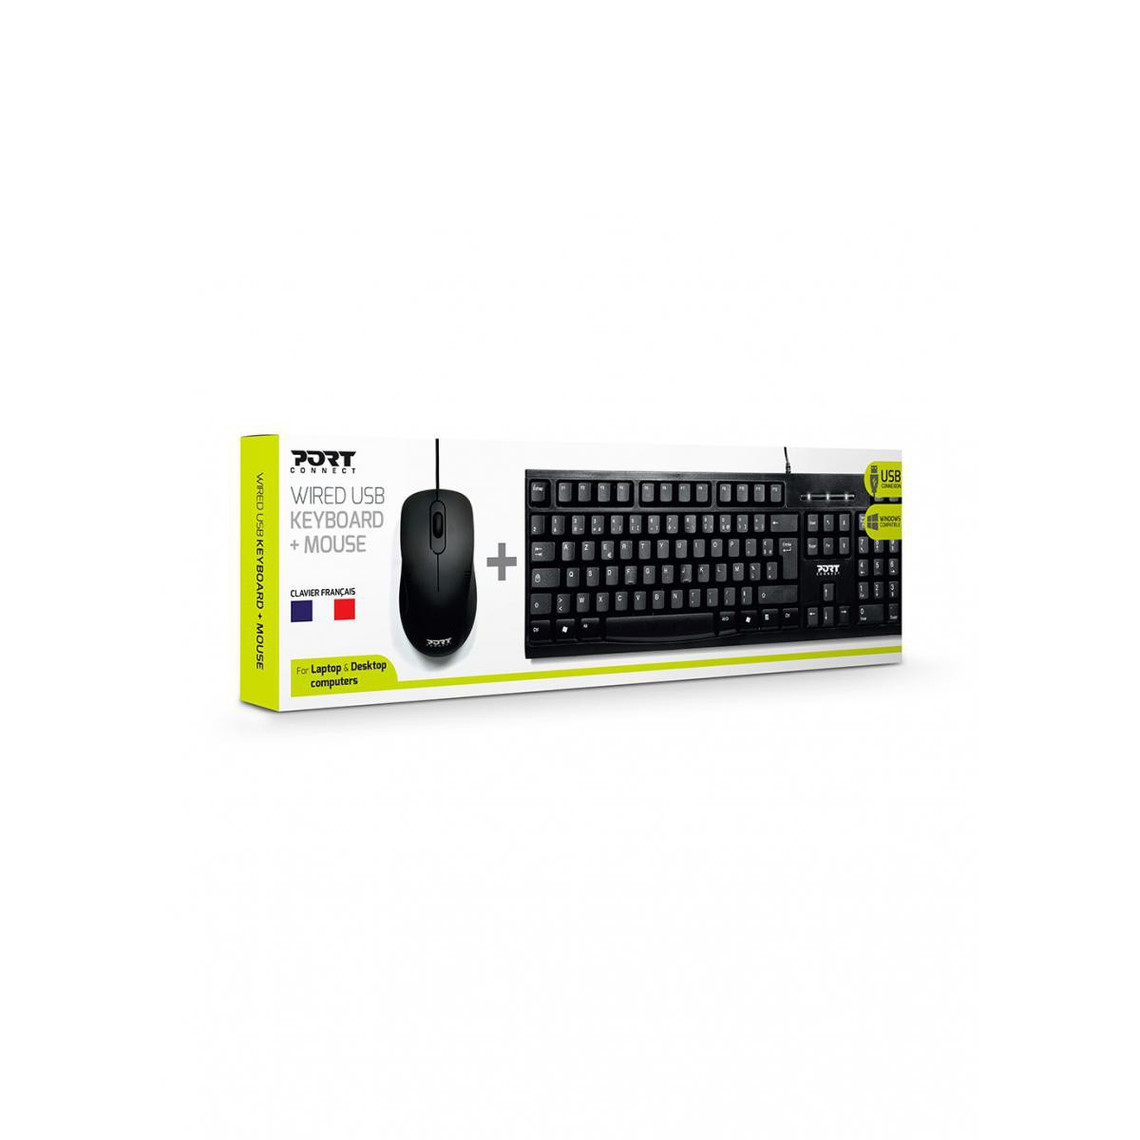 Port Design Pack Kbd+Mouse (FR) Pack Keyboard + Mouse Office Pro Bluetooth (FR)